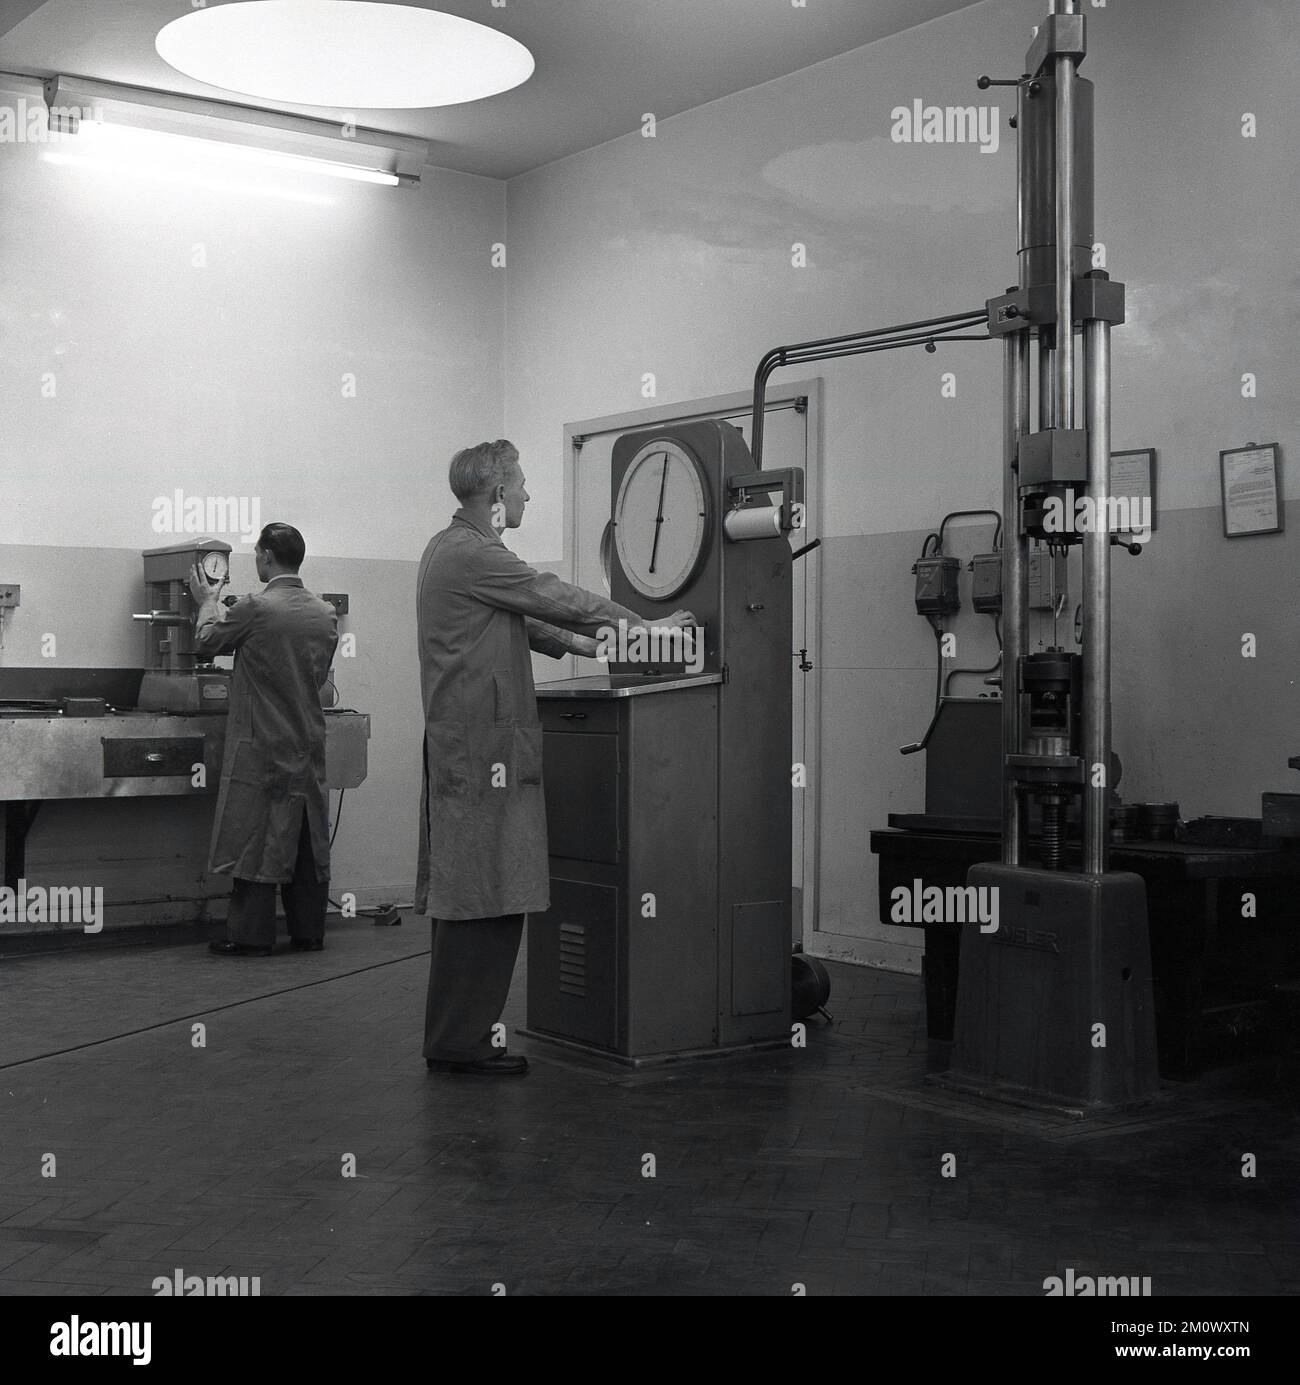 1950s, historique, steelworks, un long revêtement interne travaillant avec une machine de contrôle industrielle avec un grand cadran à l'Abbey Works, Port Talbot, sud du pays de Galles, Royaume-Uni. L'une des machines vues est fabriquée par Amsler, une société suisse qui a fabriqué des machines d'essai pour la tôle. Banque D'Images